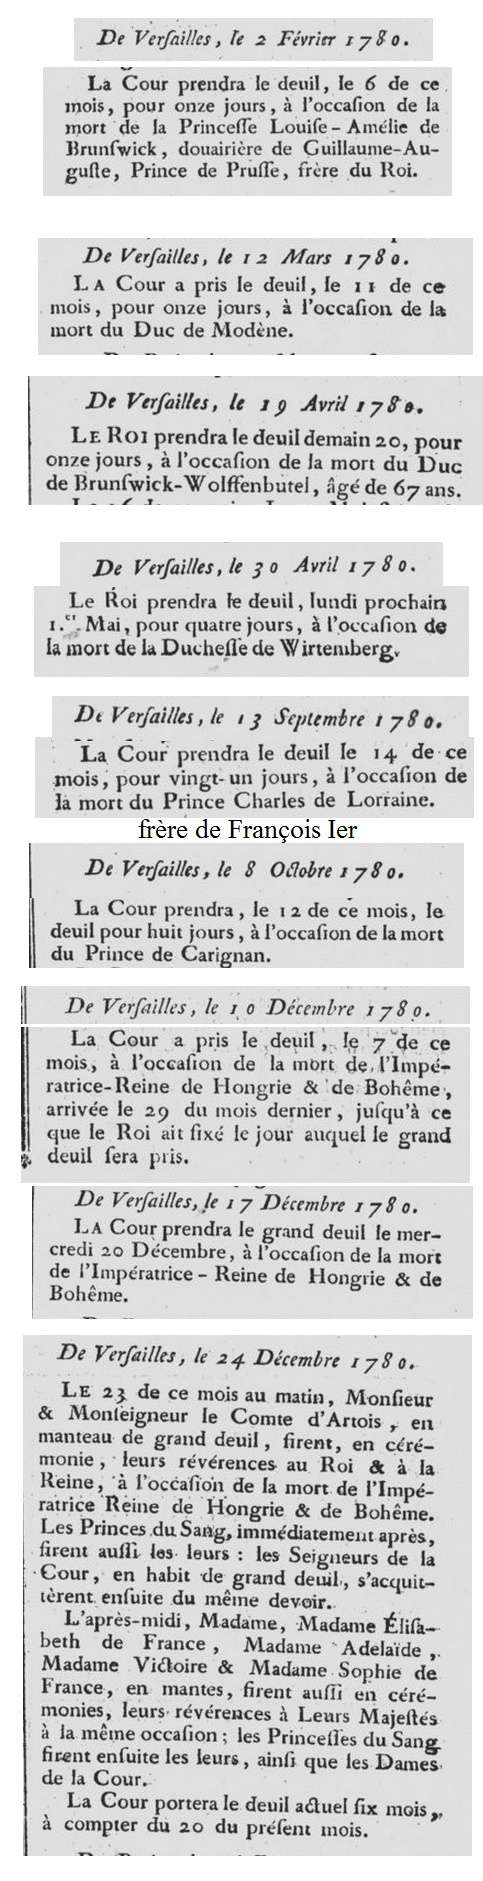 Le deuil à la cour de France et au XVIIIe siècle - Page 5 1781_b10